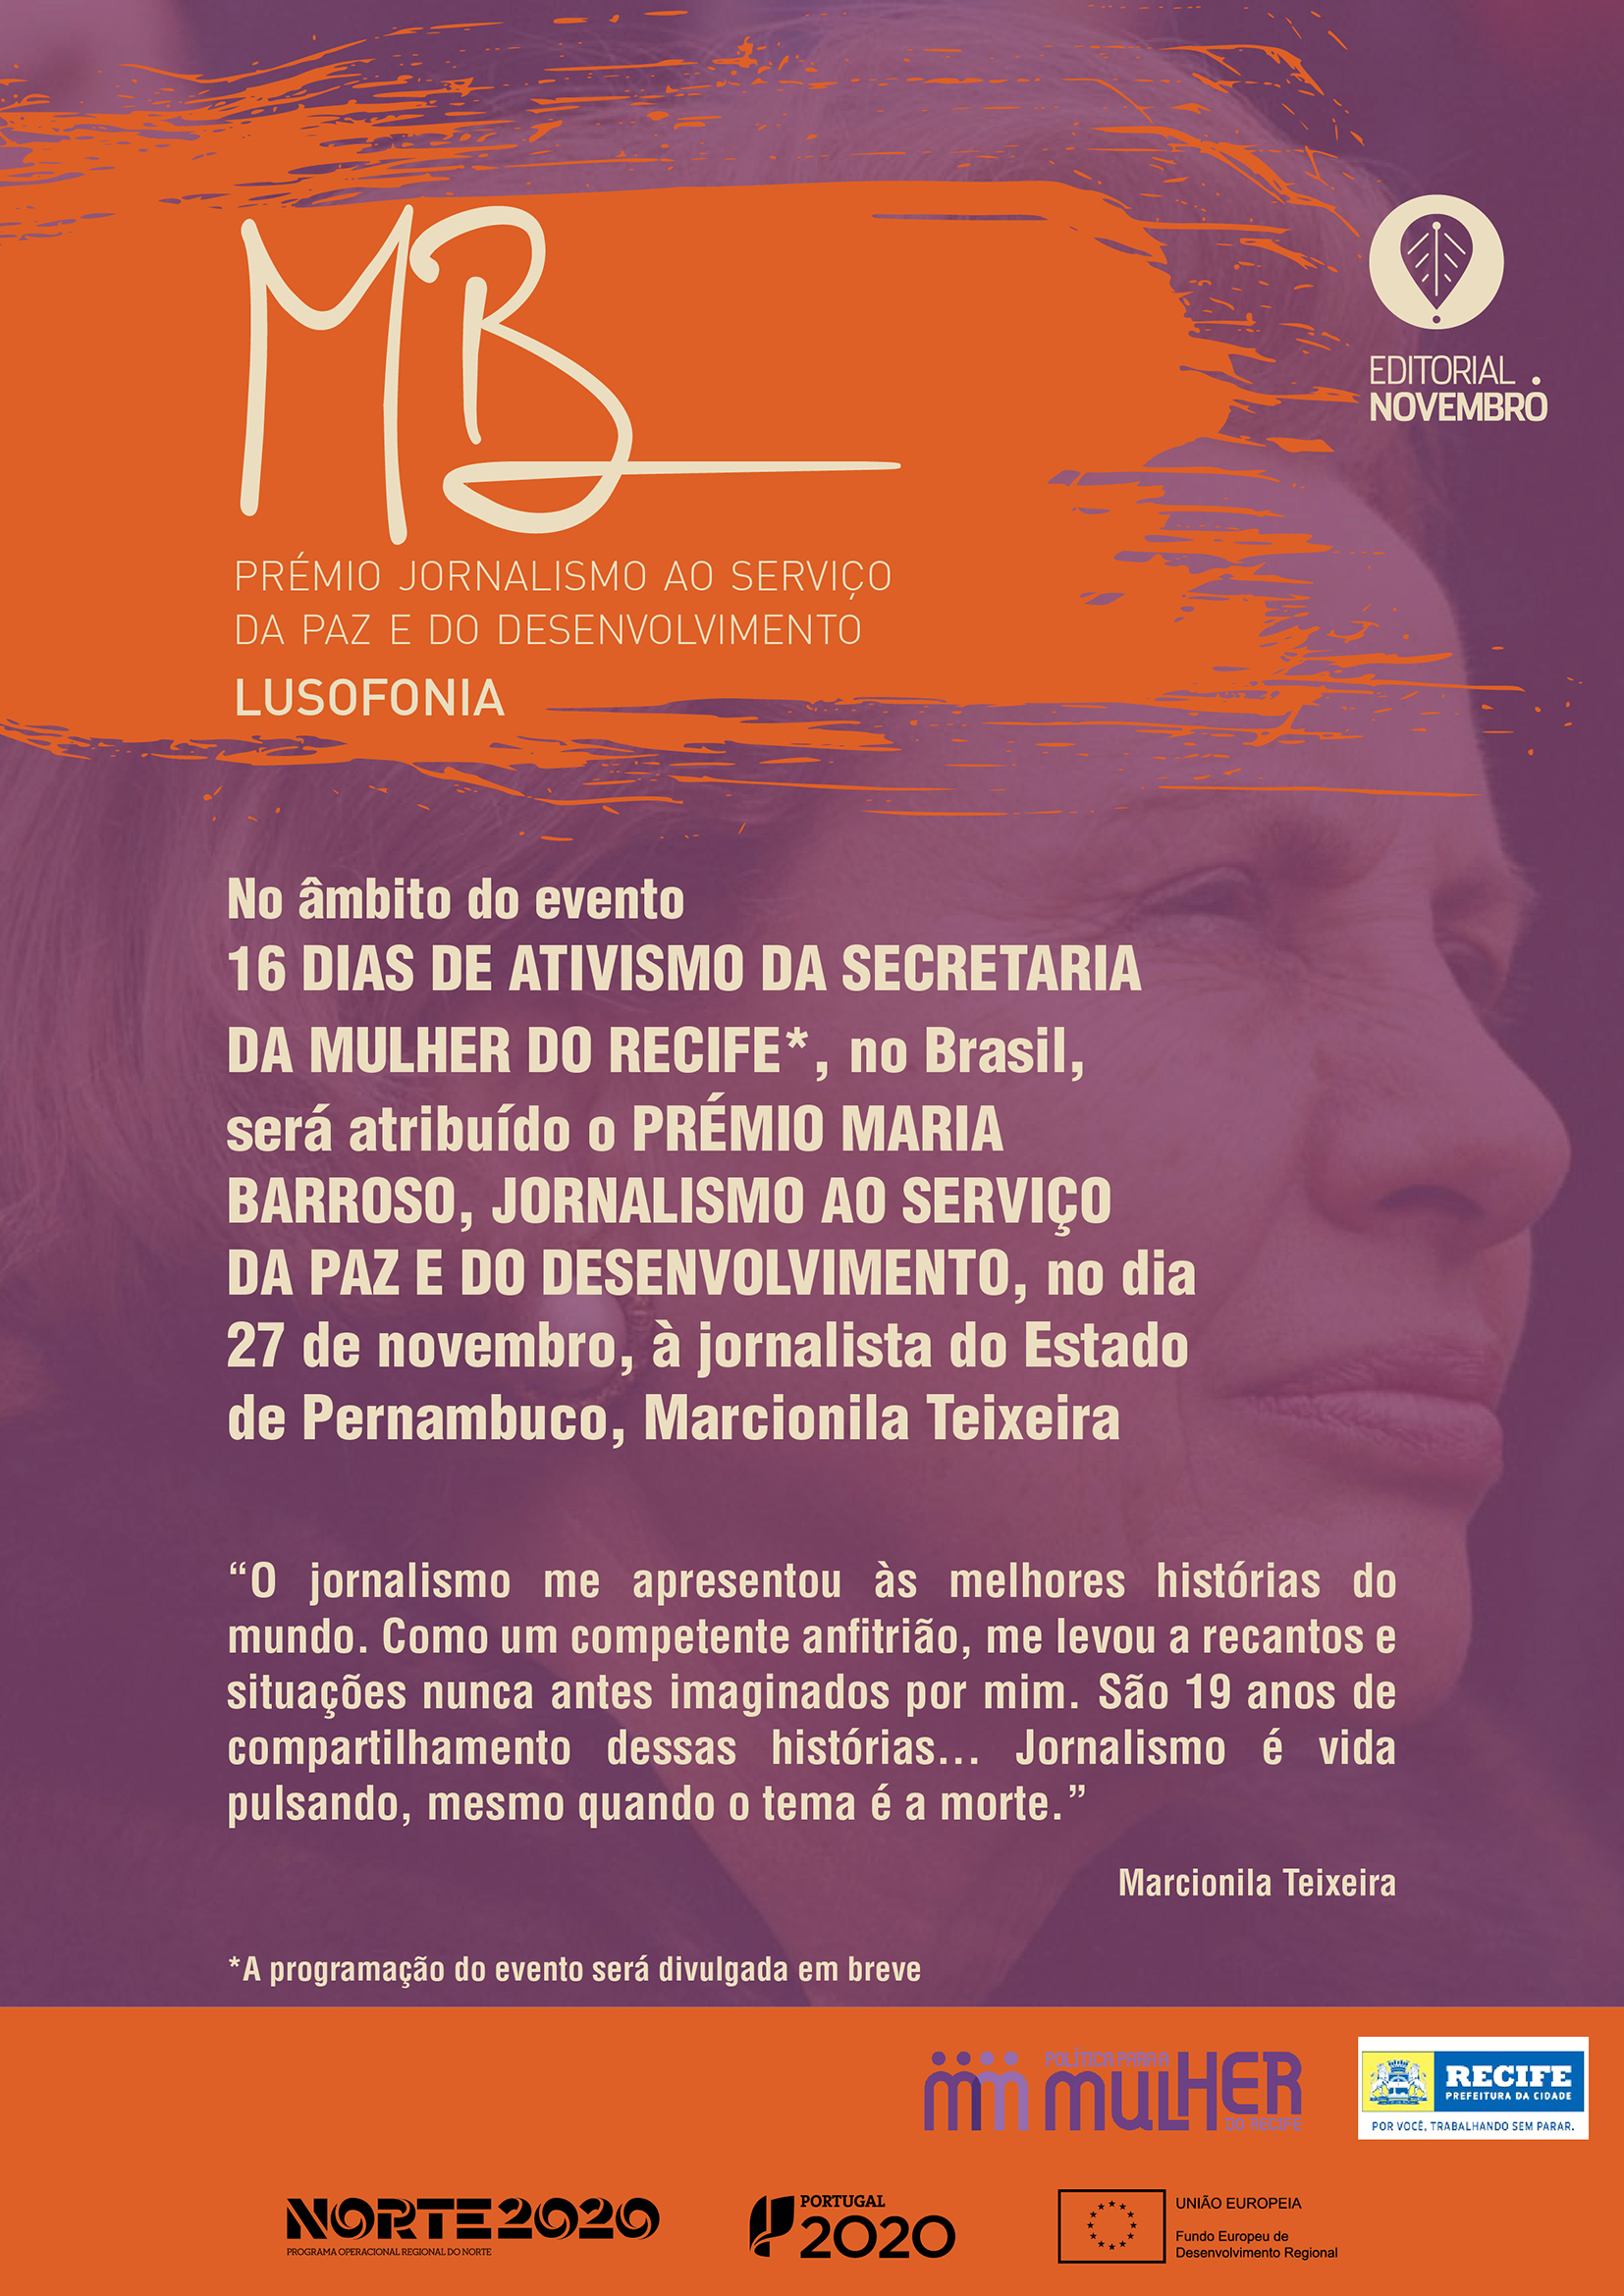 “Prémio Maria Barroso Jornalismo ao Serviço da Paz e do Desenvolvimento”